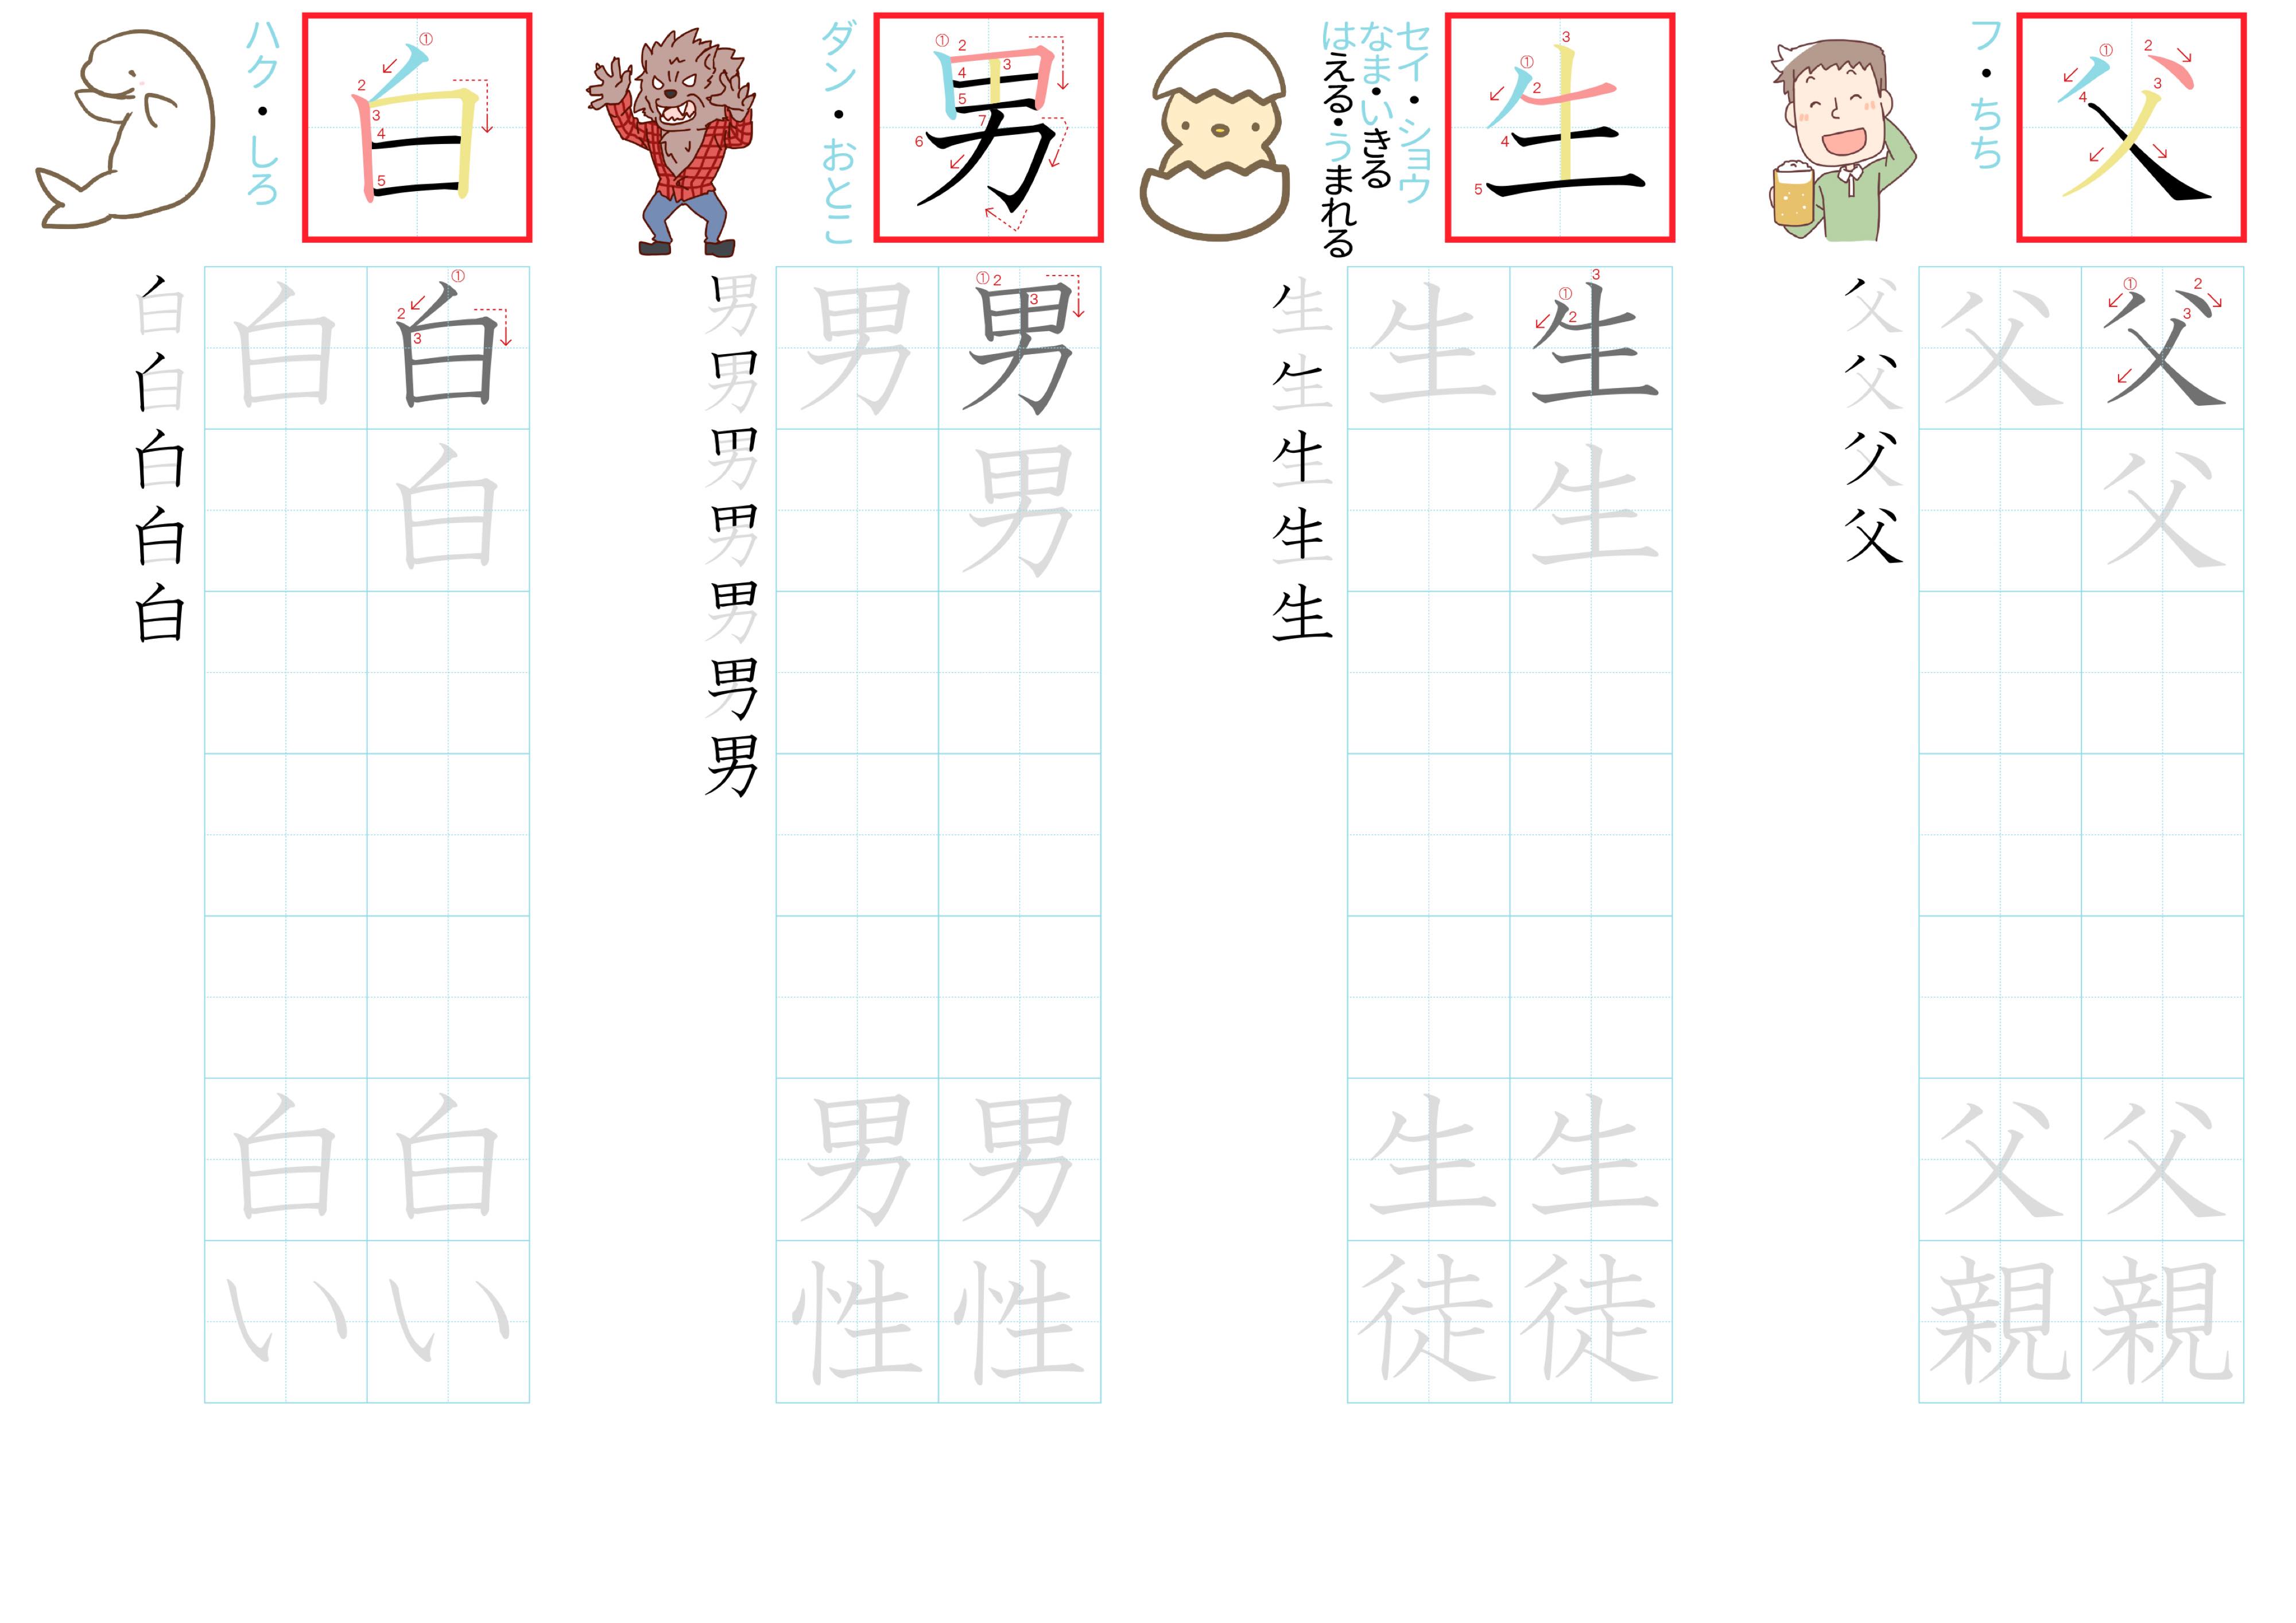 kanji-practice-card-n5-japanese-016